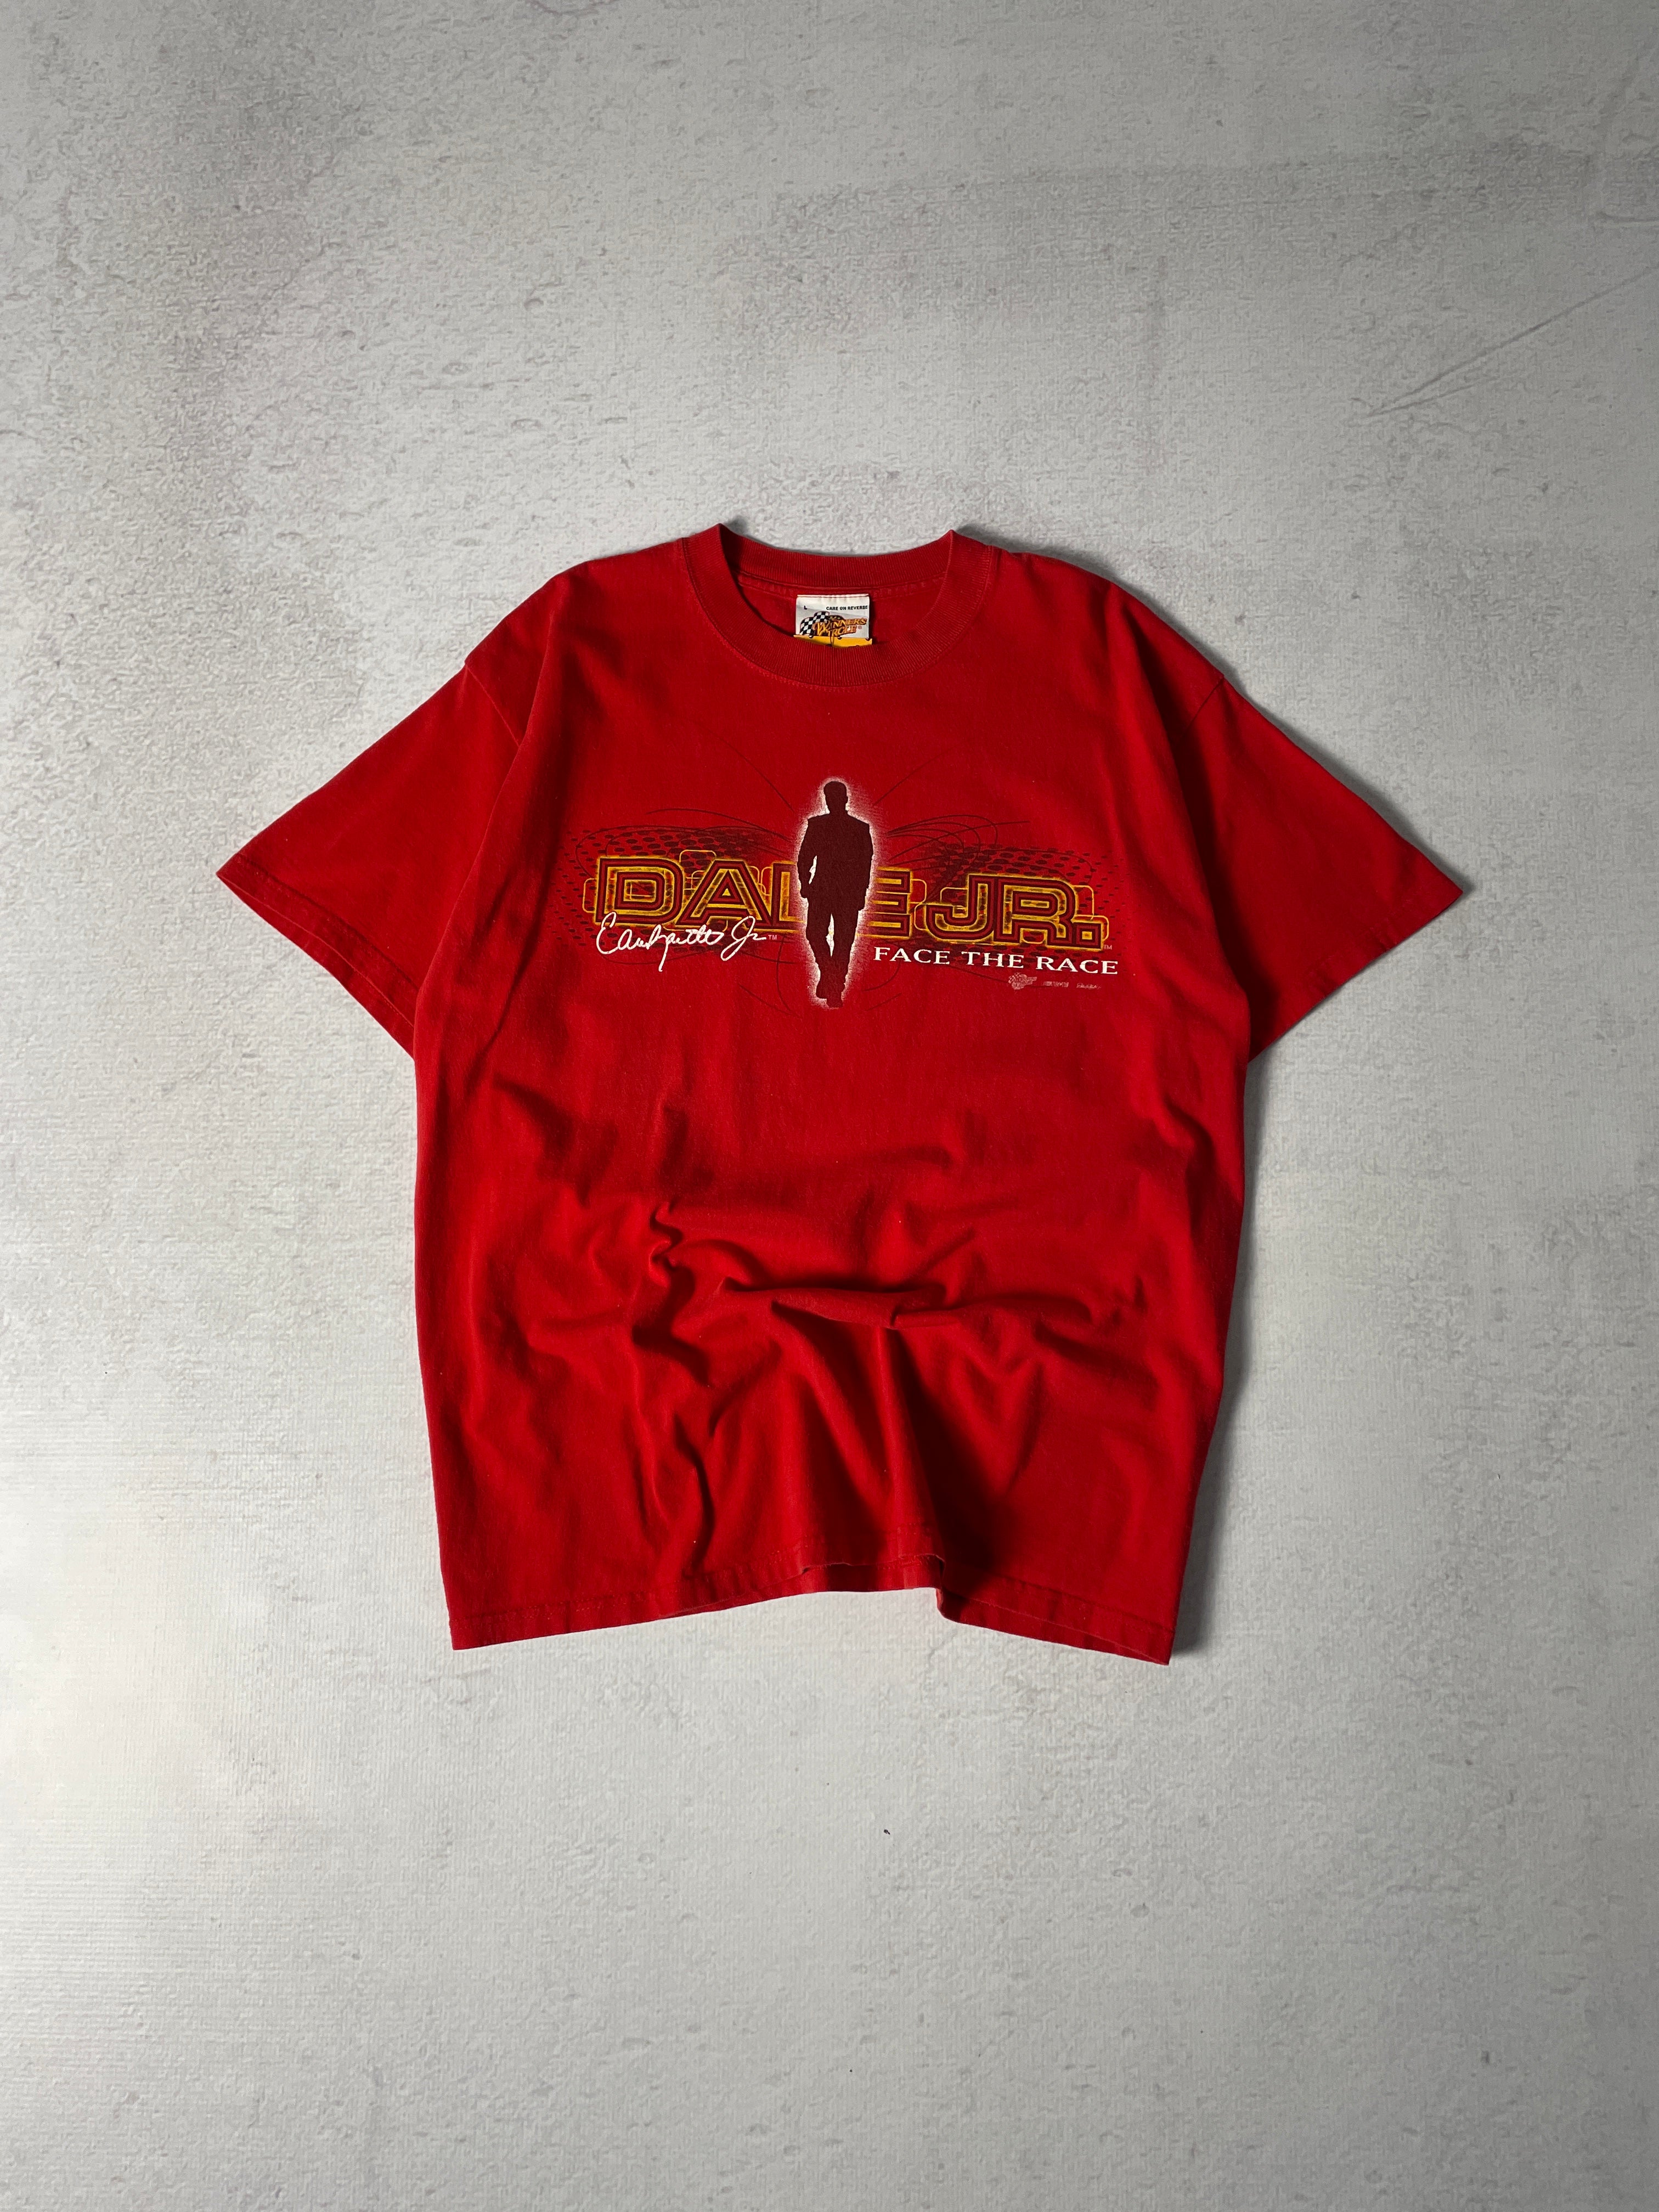 Vintage Nascar Dale Earnhardt Jr T-Shirt - Men's Large